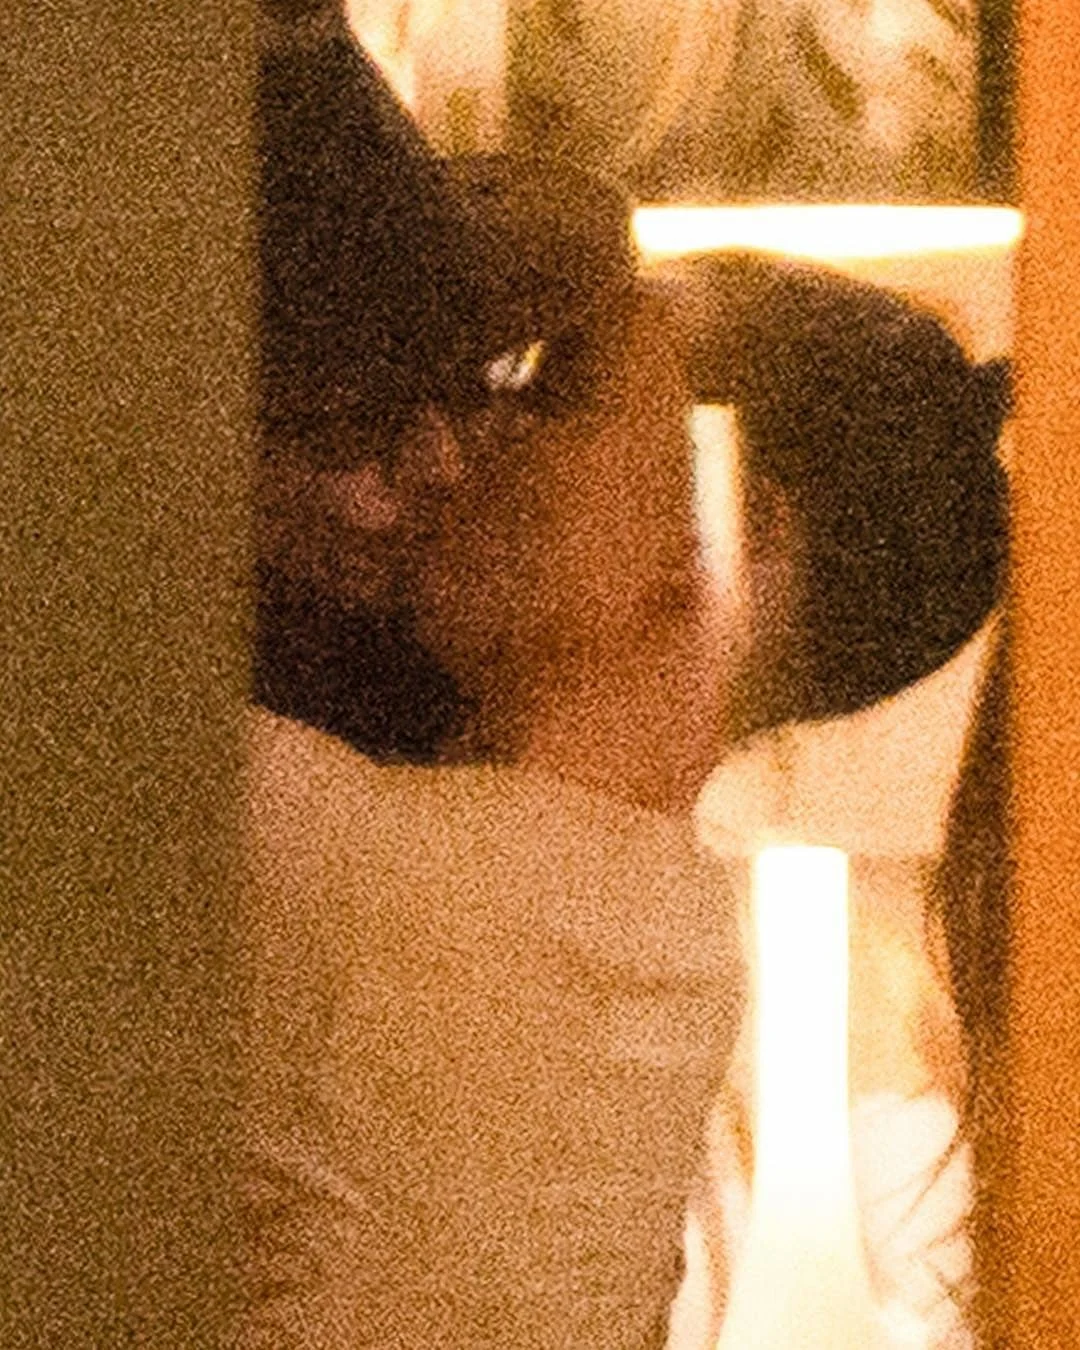 Всі обговорюють пристрасні поцілунки 55-річного Джонні Деппа з юною дівчиною - фото 422115